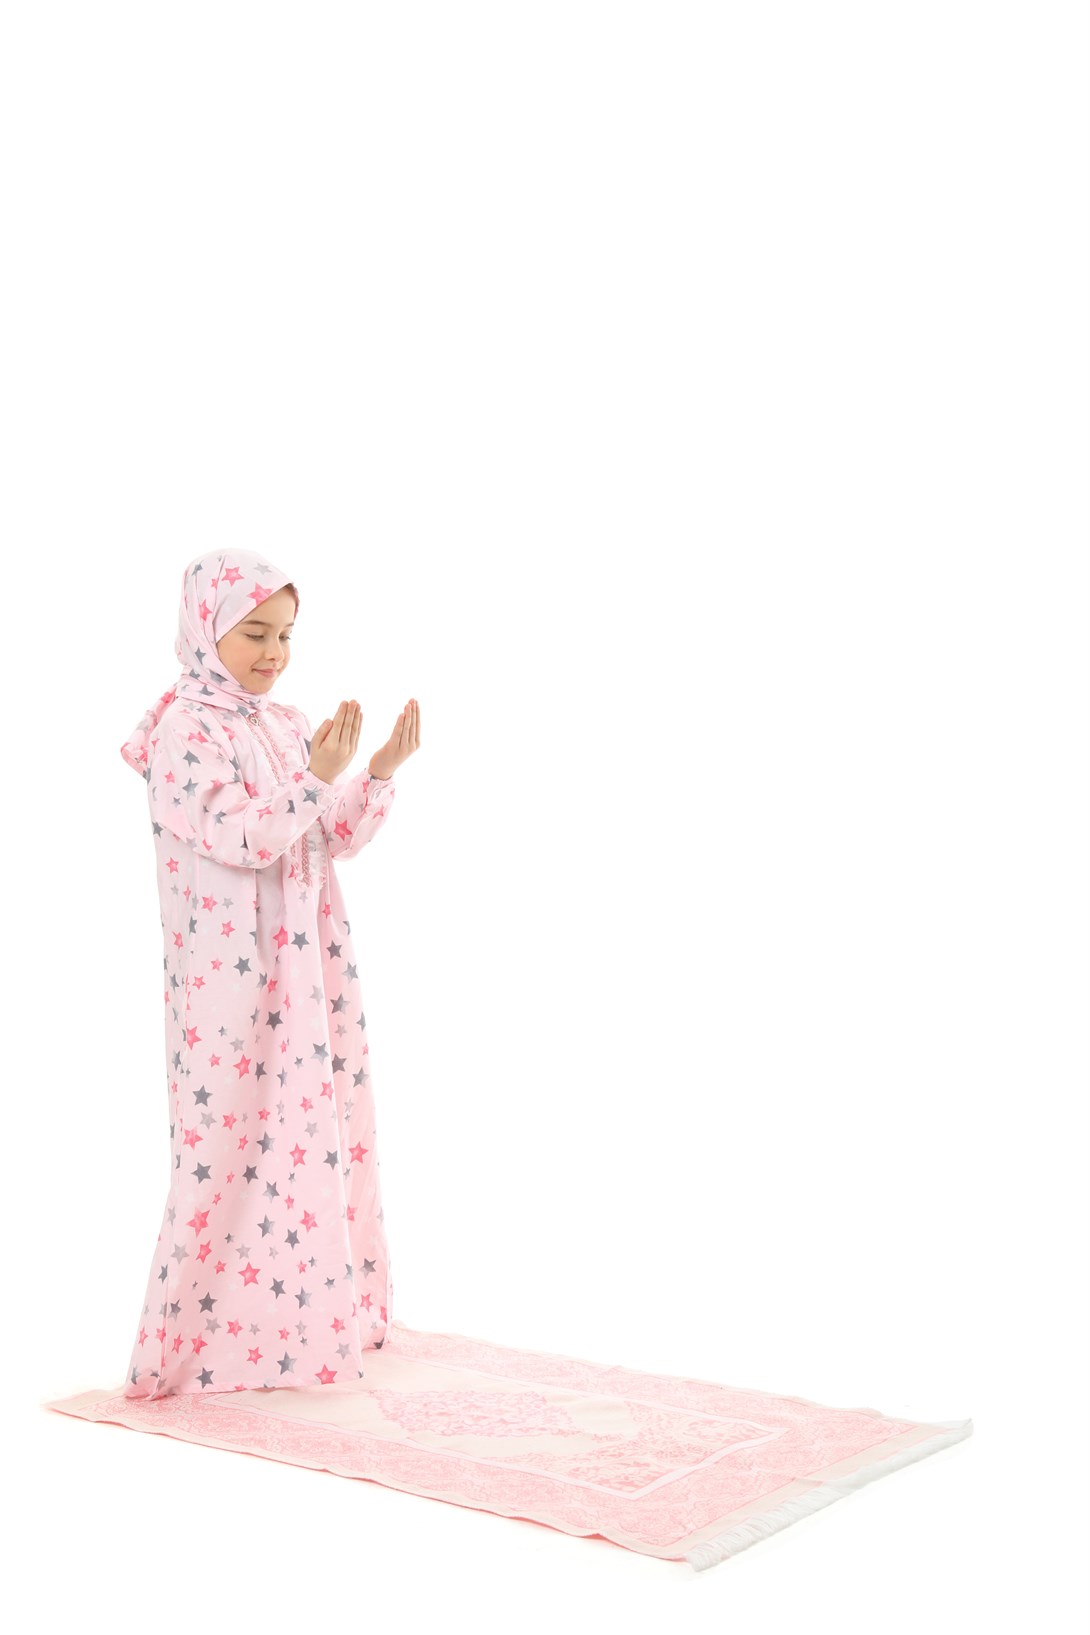 Practical Zippered Cotton Girls' Prayer Dress 3-Piece Set Pink Printed